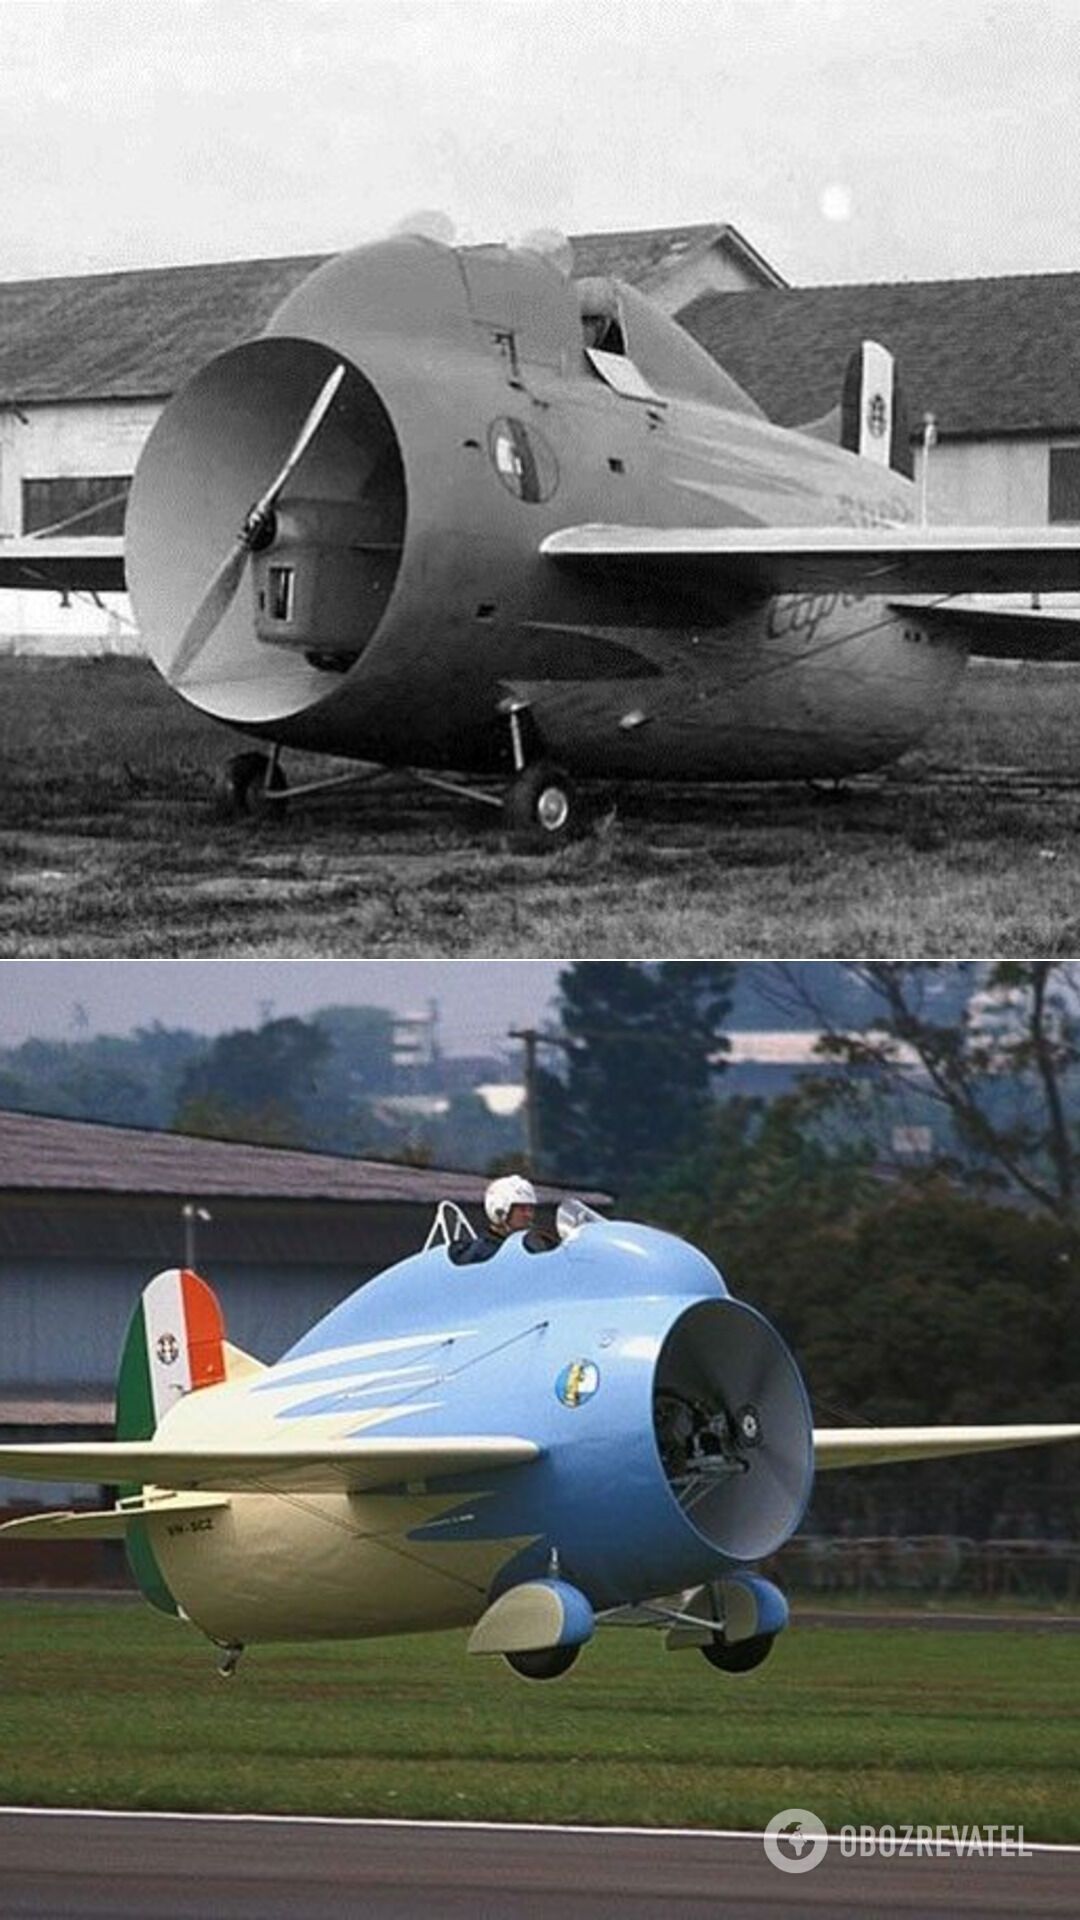 Stipa-Caproni – экспериментальный "туннельный" самолет италийского производства. Первый "Стипа-Капрони" был оборудован двигателем DeHavilland Gipsy III мощностью 120 л. с., его полет состоялся 7 октября 1932 года. Вскоре авторские права на него были проданы во Францию. Трудности последовавшего затем военного времени не позволили продолжить столь необычный эксперимент